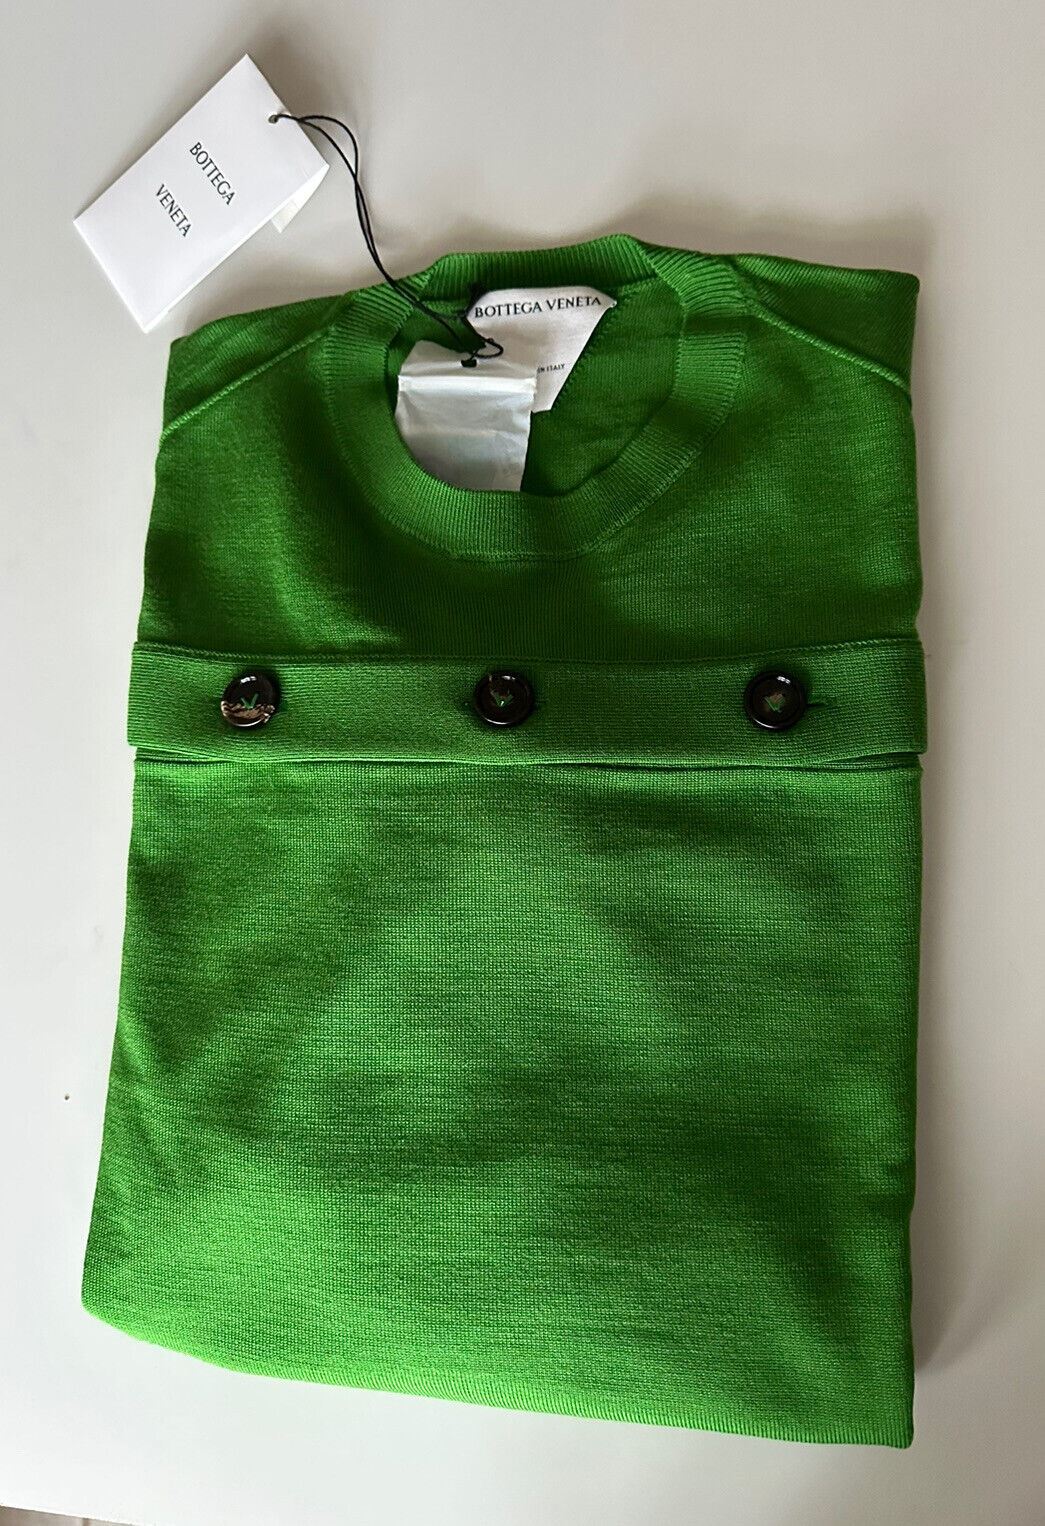 Neu mit Etikett: 1.750 $ Bottega Veneta Damen-Strickoberteil aus grüner Wolle mit offenen Knöpfen, Größe L, Größe 648729